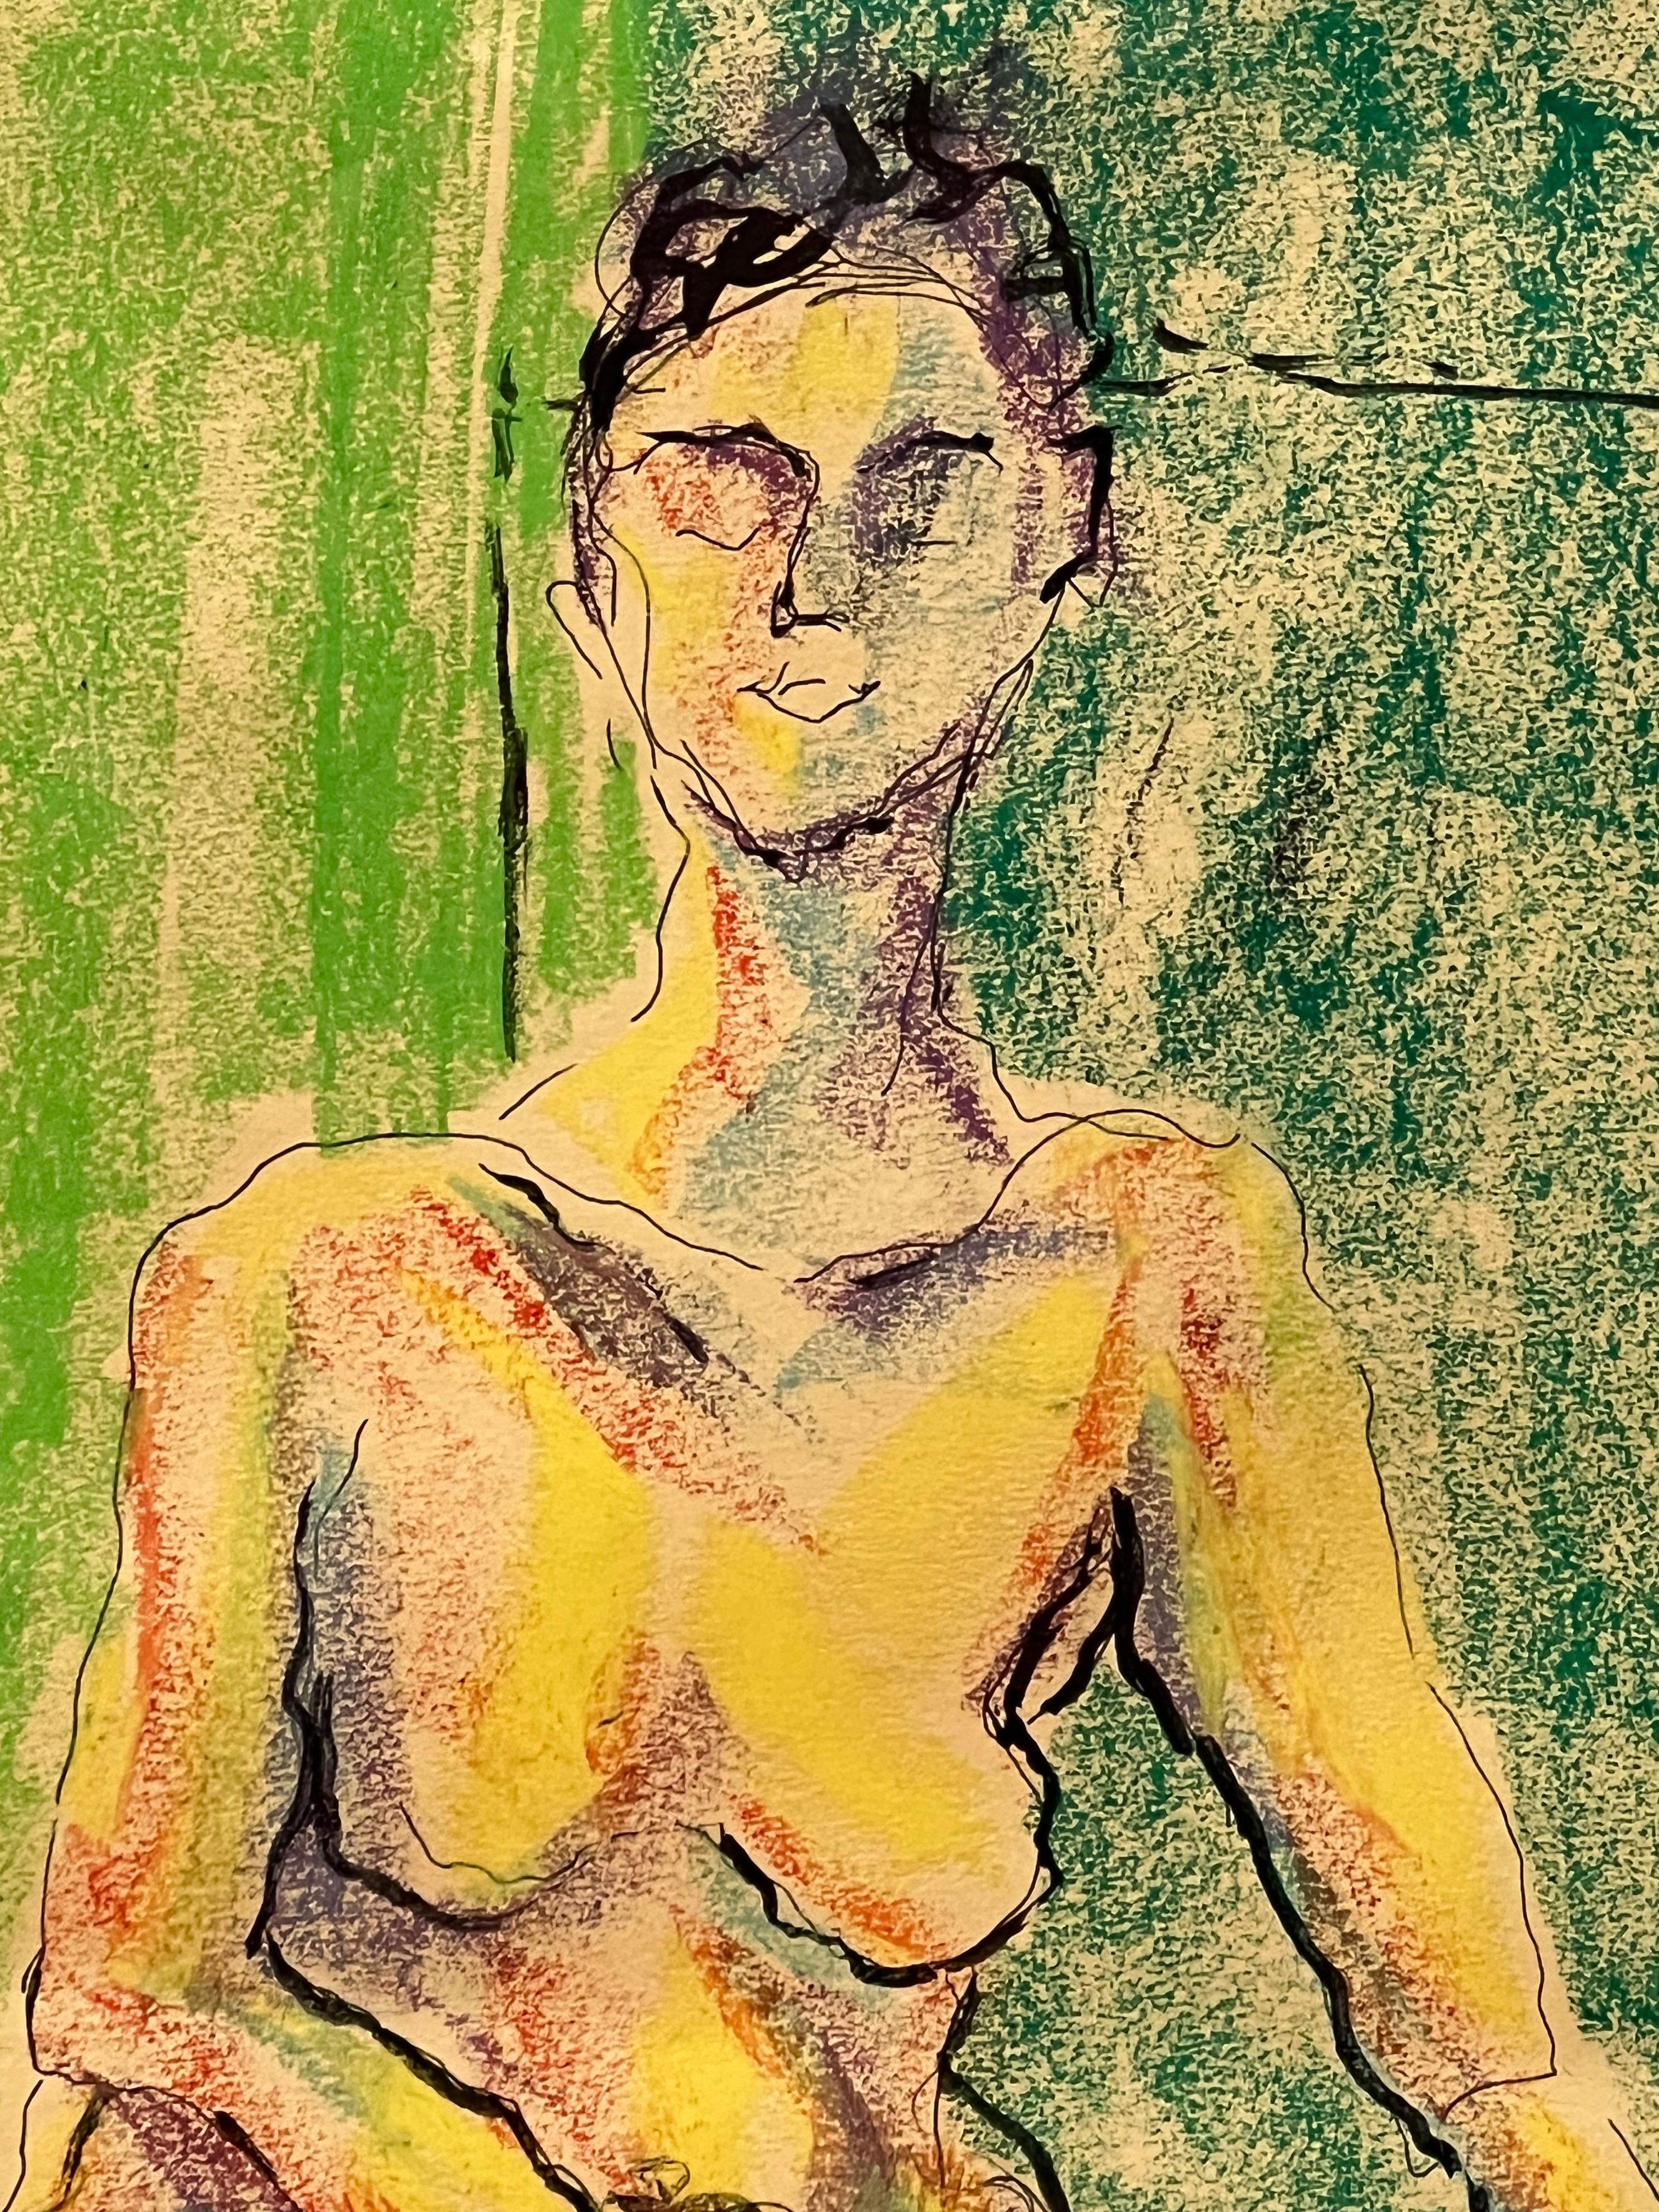 Dieses Kunstwerk zeigt eine nackte Frau, die auf dem Boden sitzt, mit einem grünen Hintergrund im Hintergrund. Die großen Augen der Frau verleihen dem Porträt etwas Jenseitiges, das auf eine fast übernatürliche Präsenz schließen lässt. Man könnte